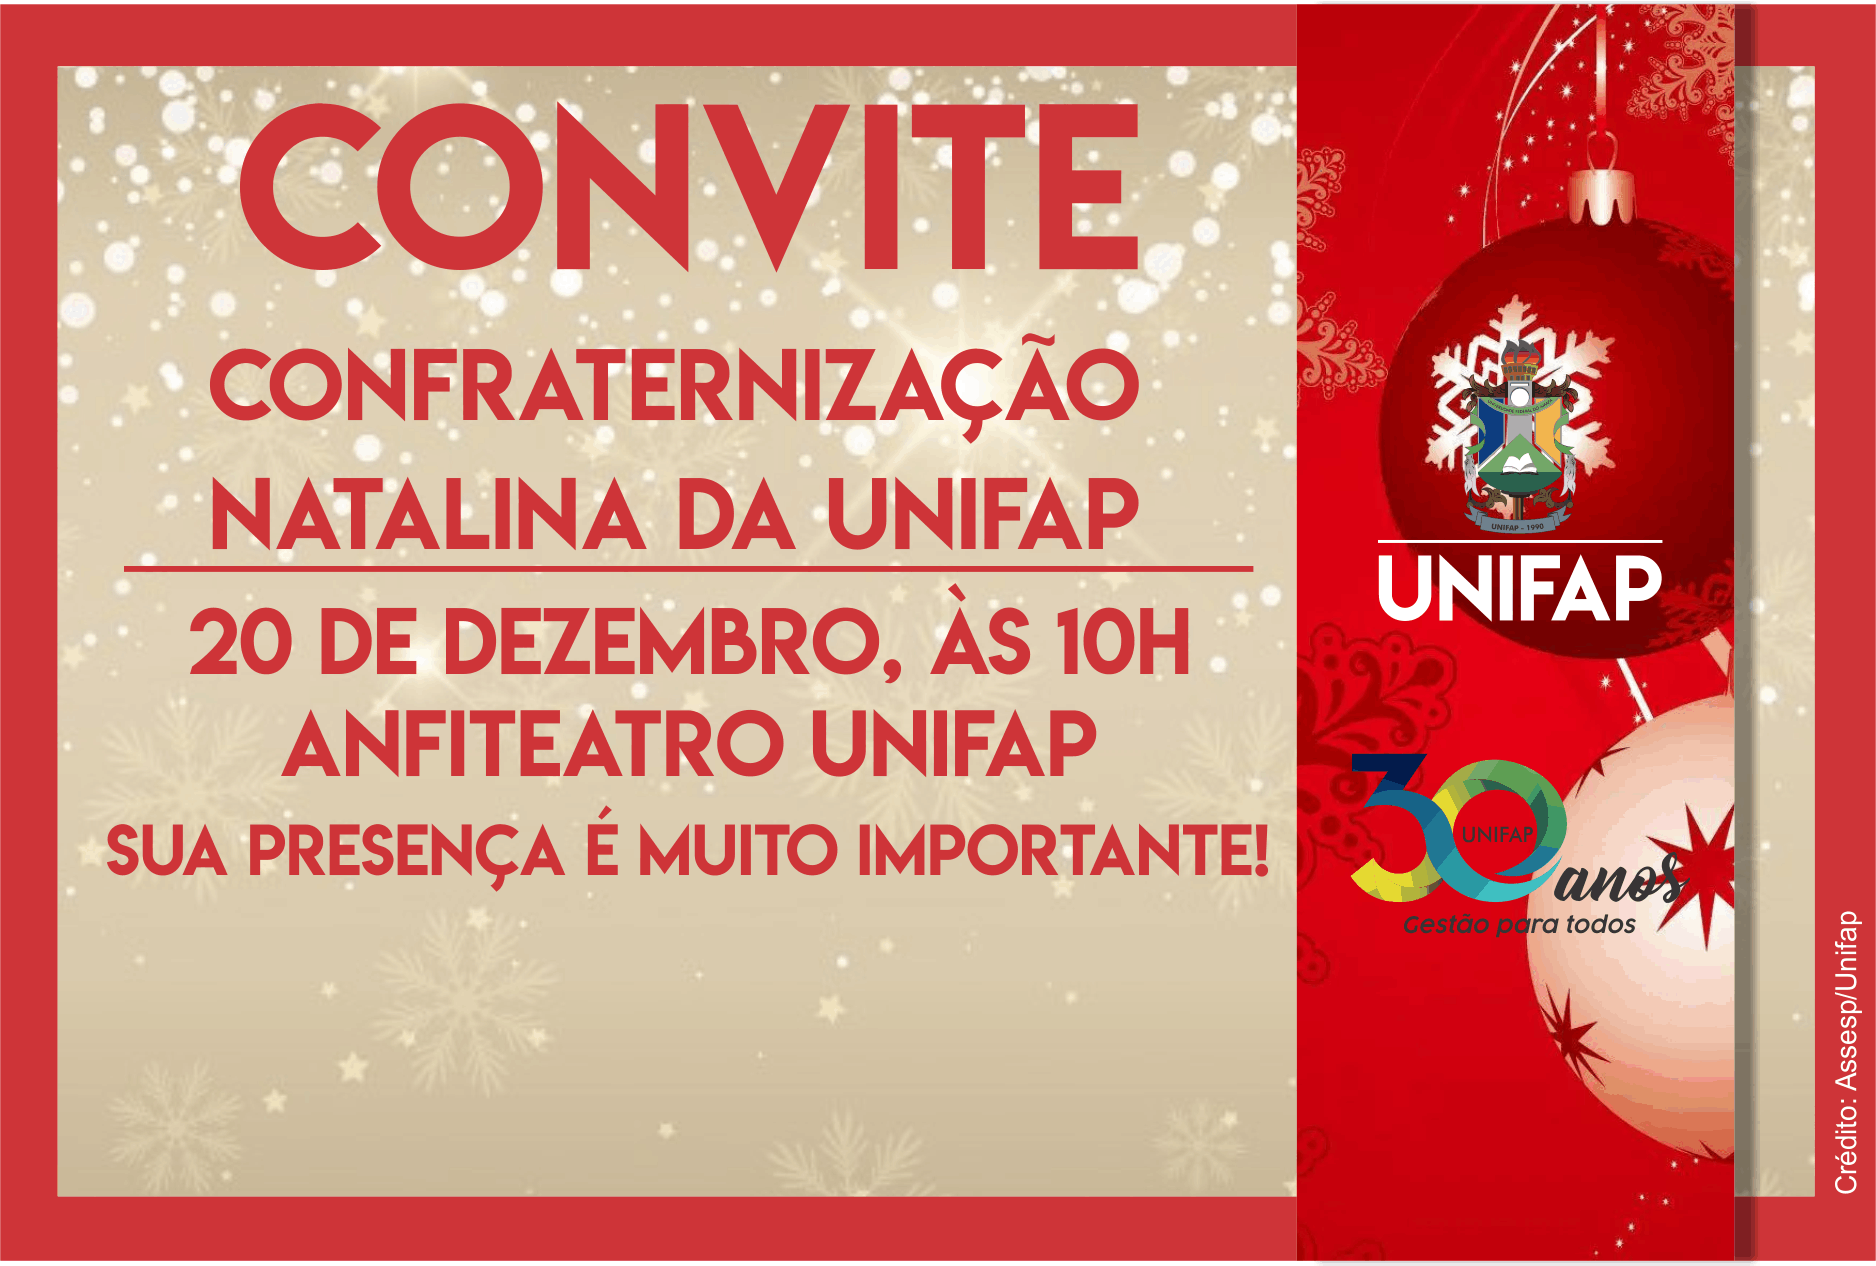 Confraternização Natalina da UNIFAP será nesta sexta-feira, 20